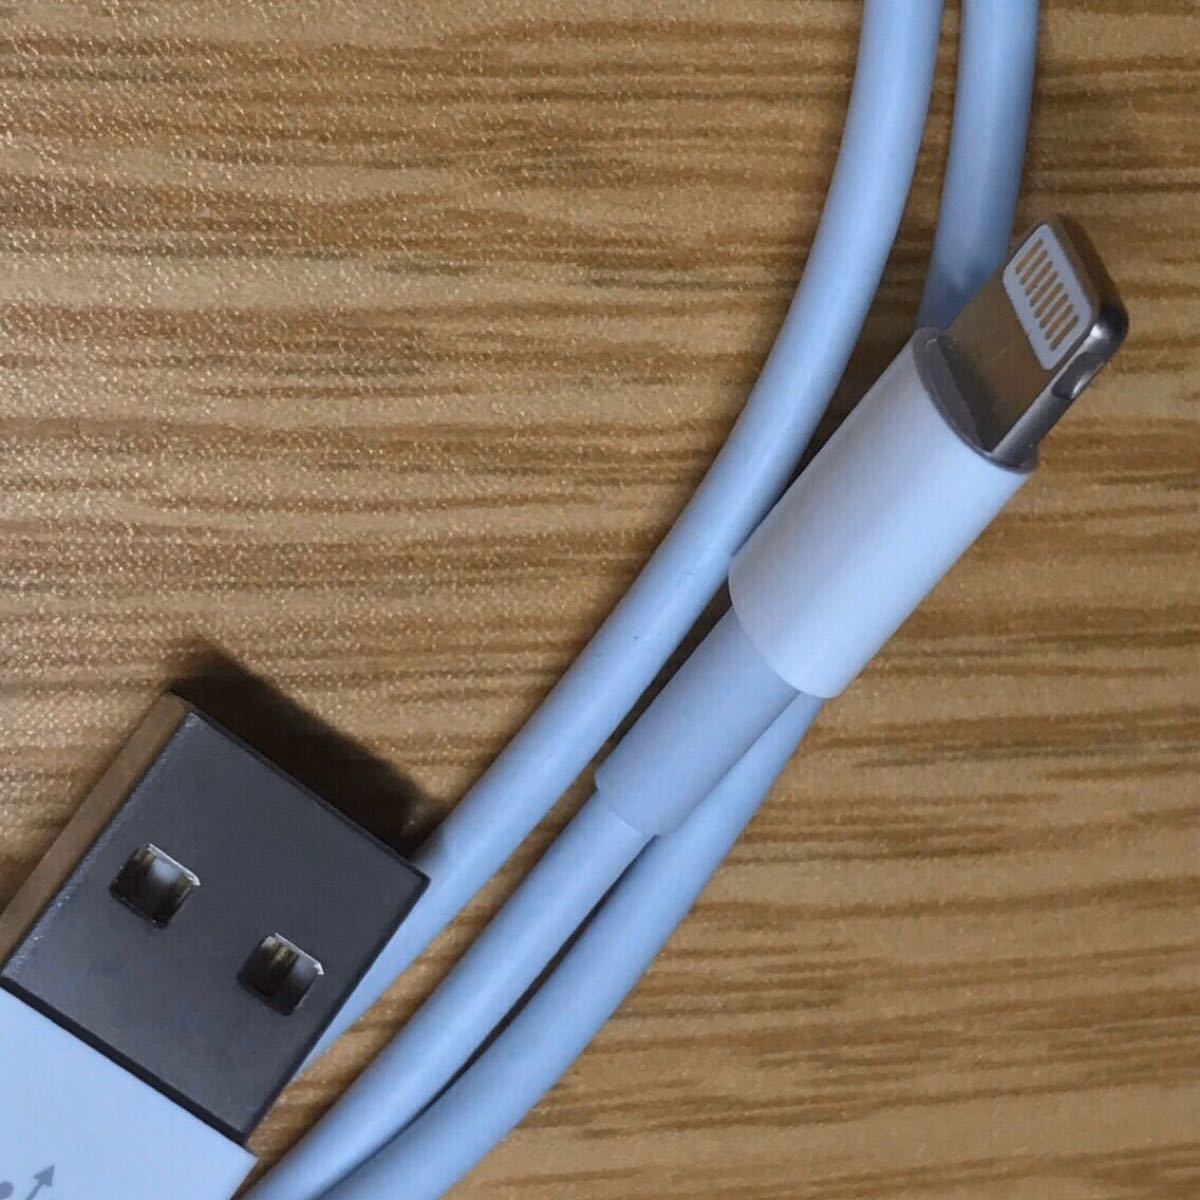 iPhone 充電器 ケーブル コード lightning cable 2m ライトニングケーブル USB スマホ 電源